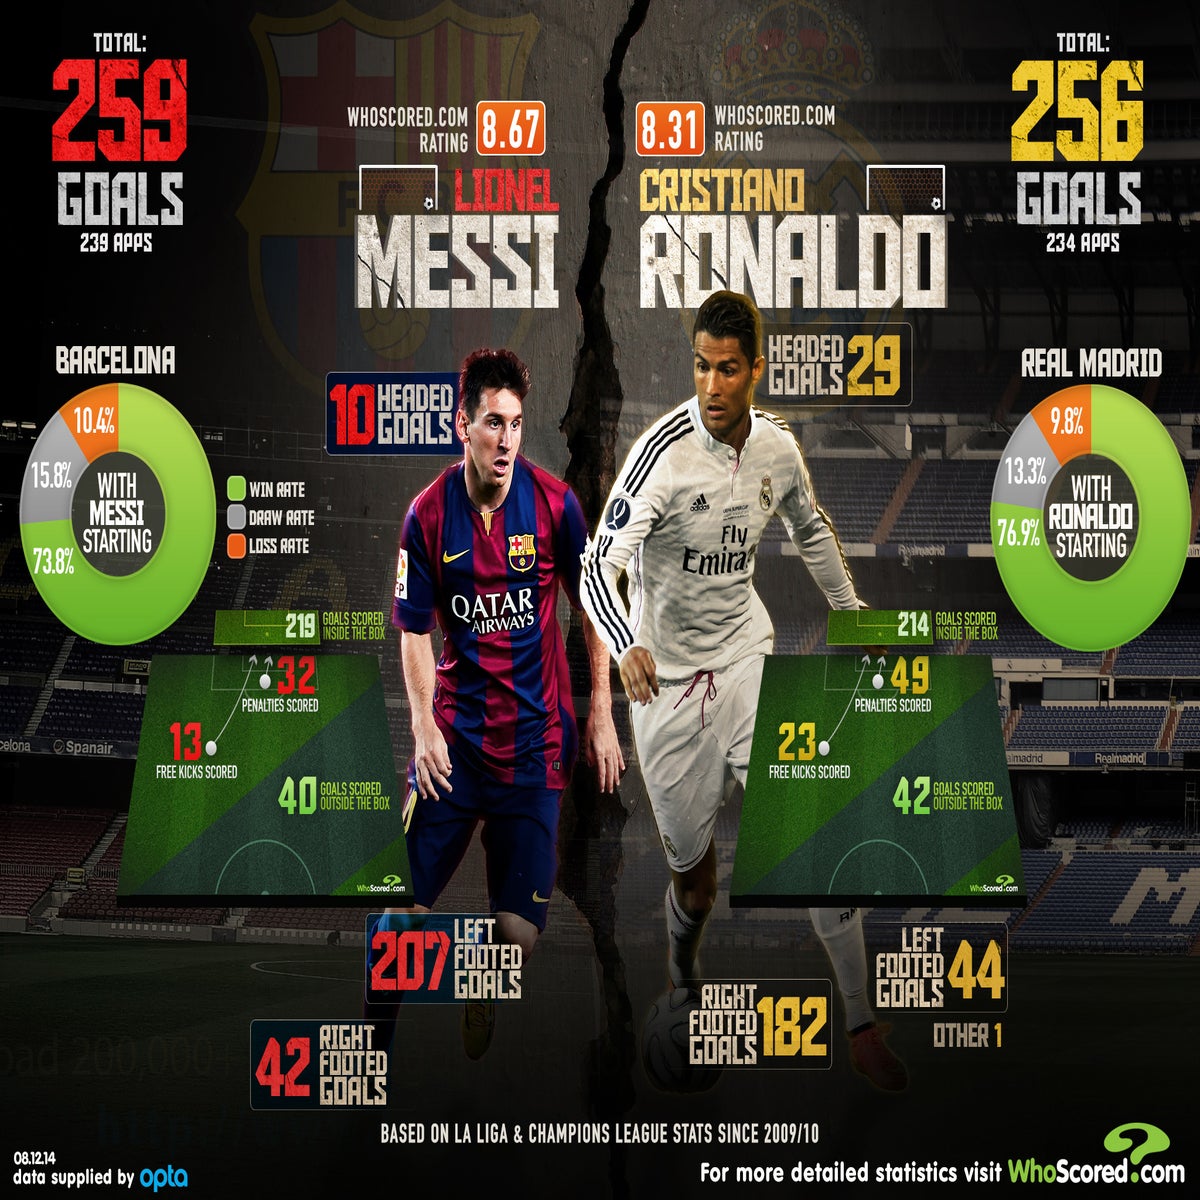 The Classical: Leo Messi vs Cristiano Ronaldo